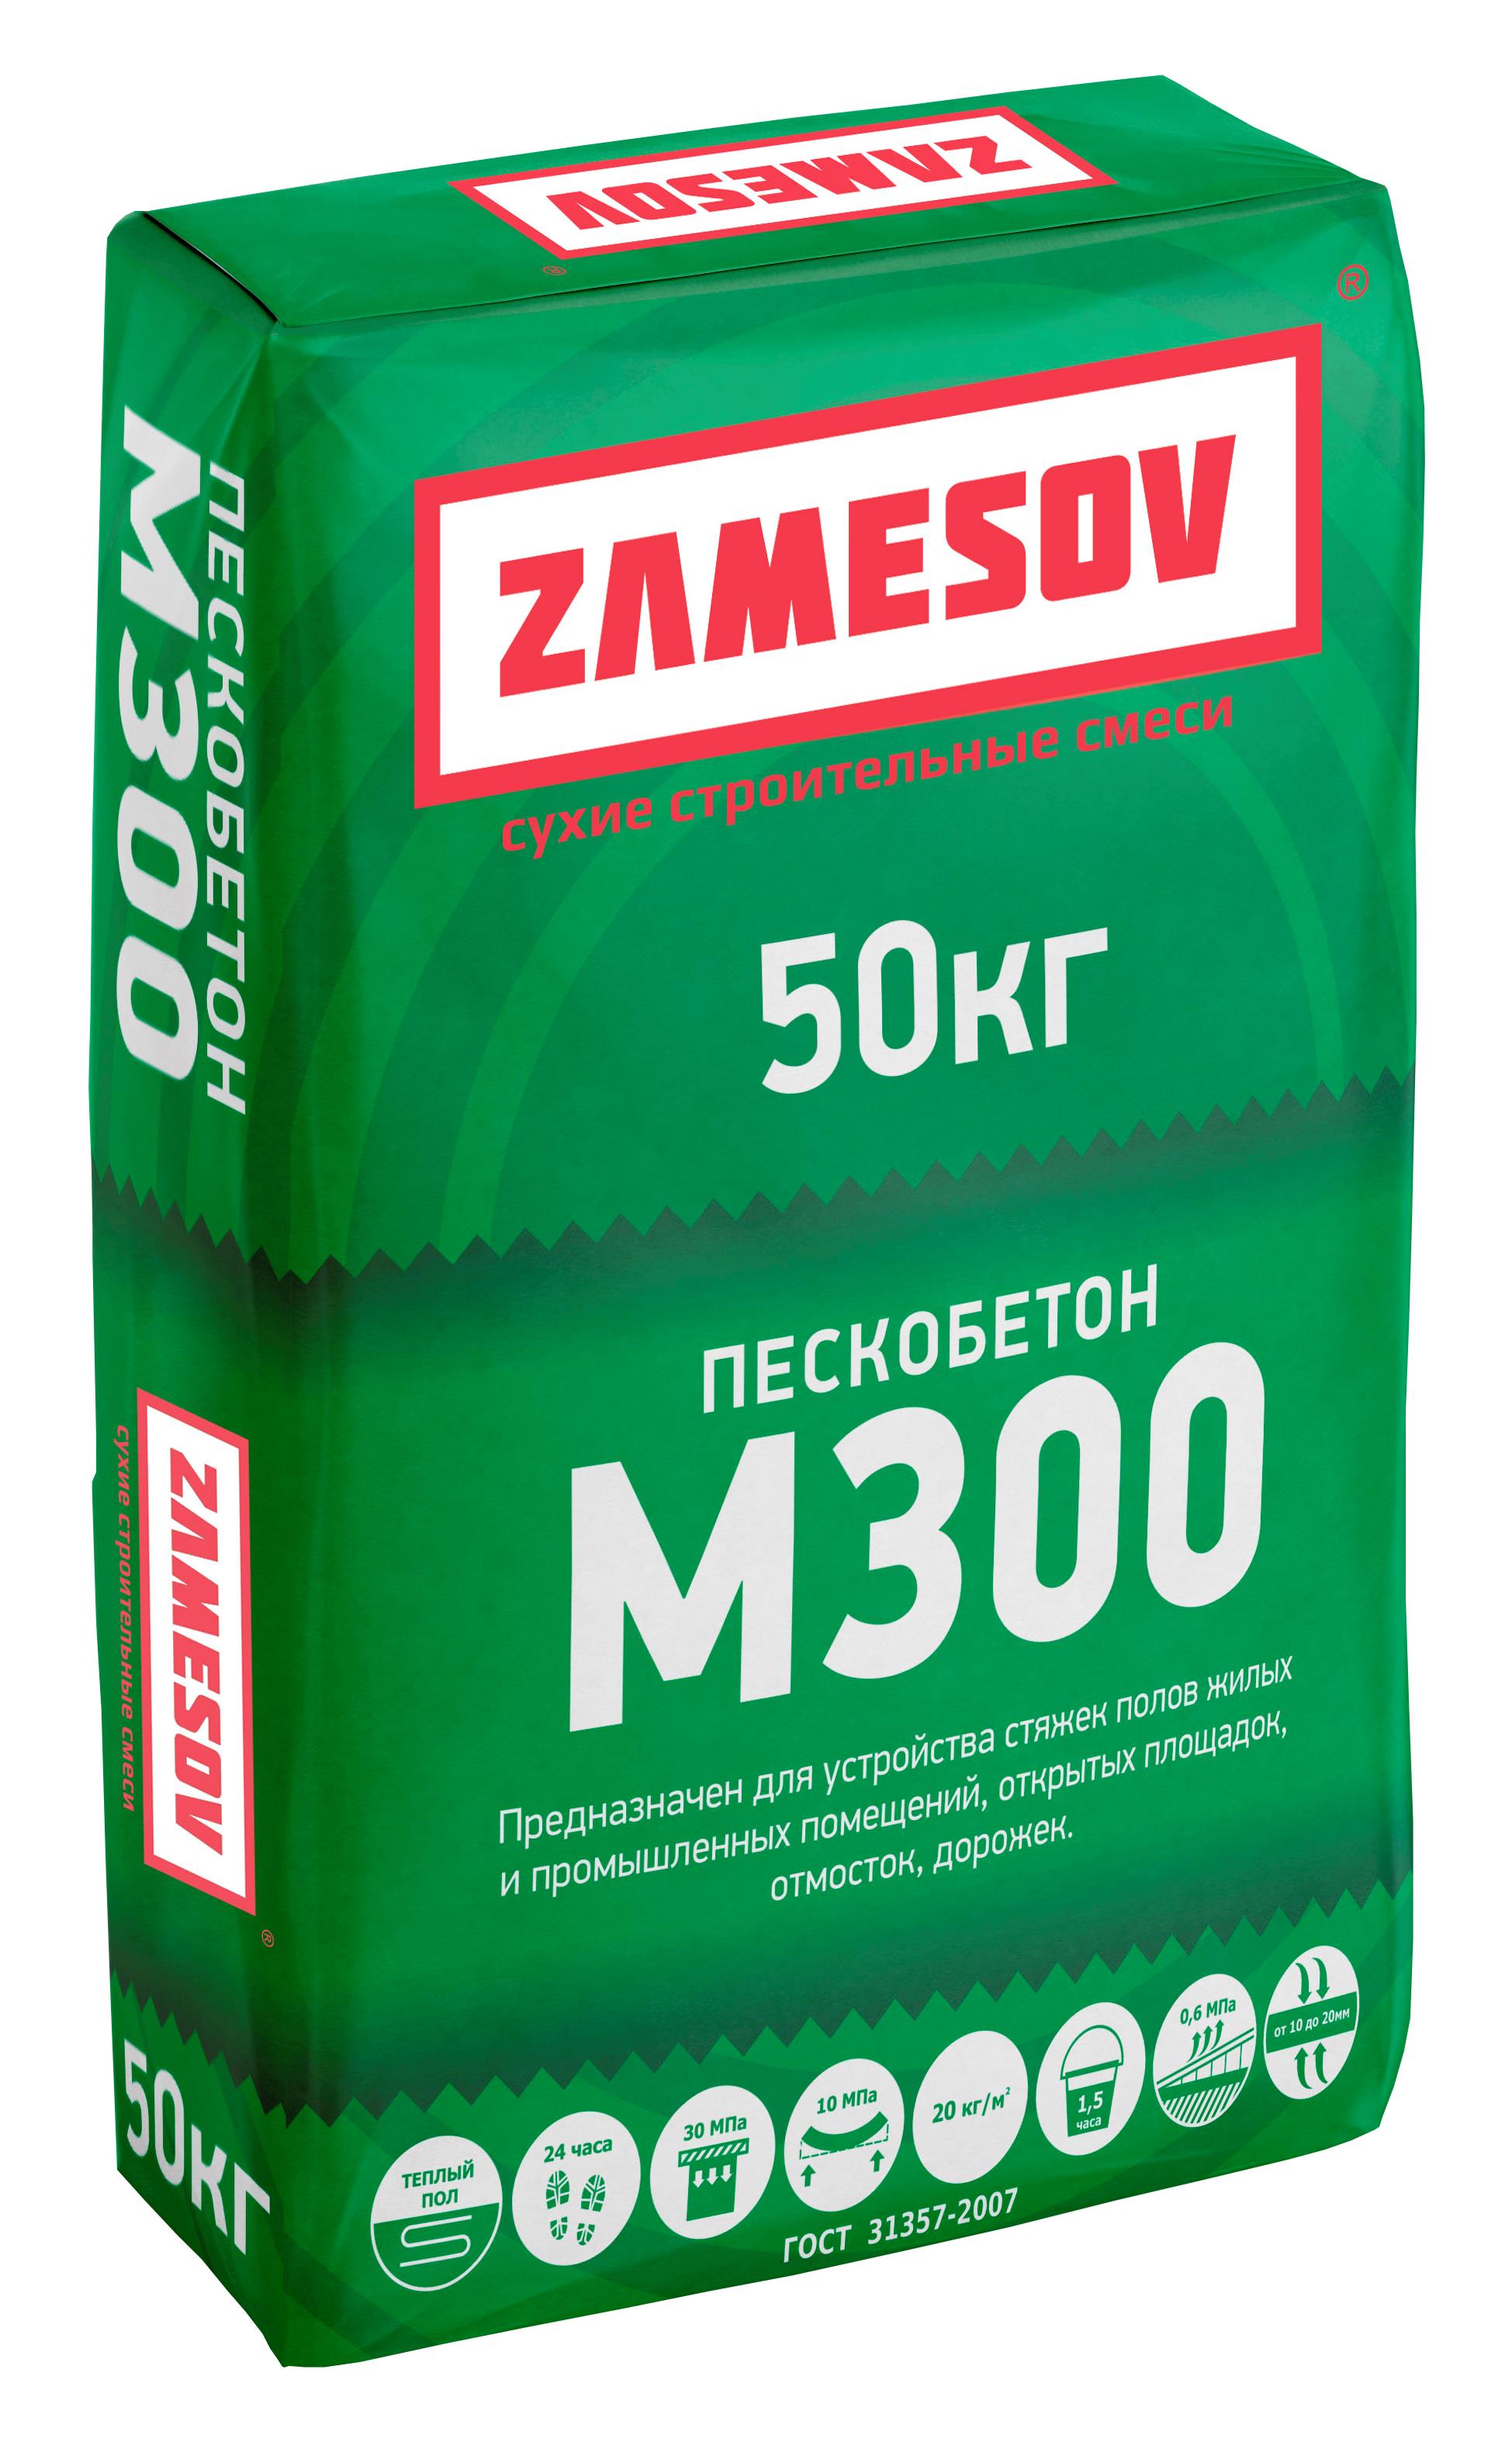 Сухая смесь М300 пескобетон (50кг) ZAMESOV в интернет магазине Главснаб